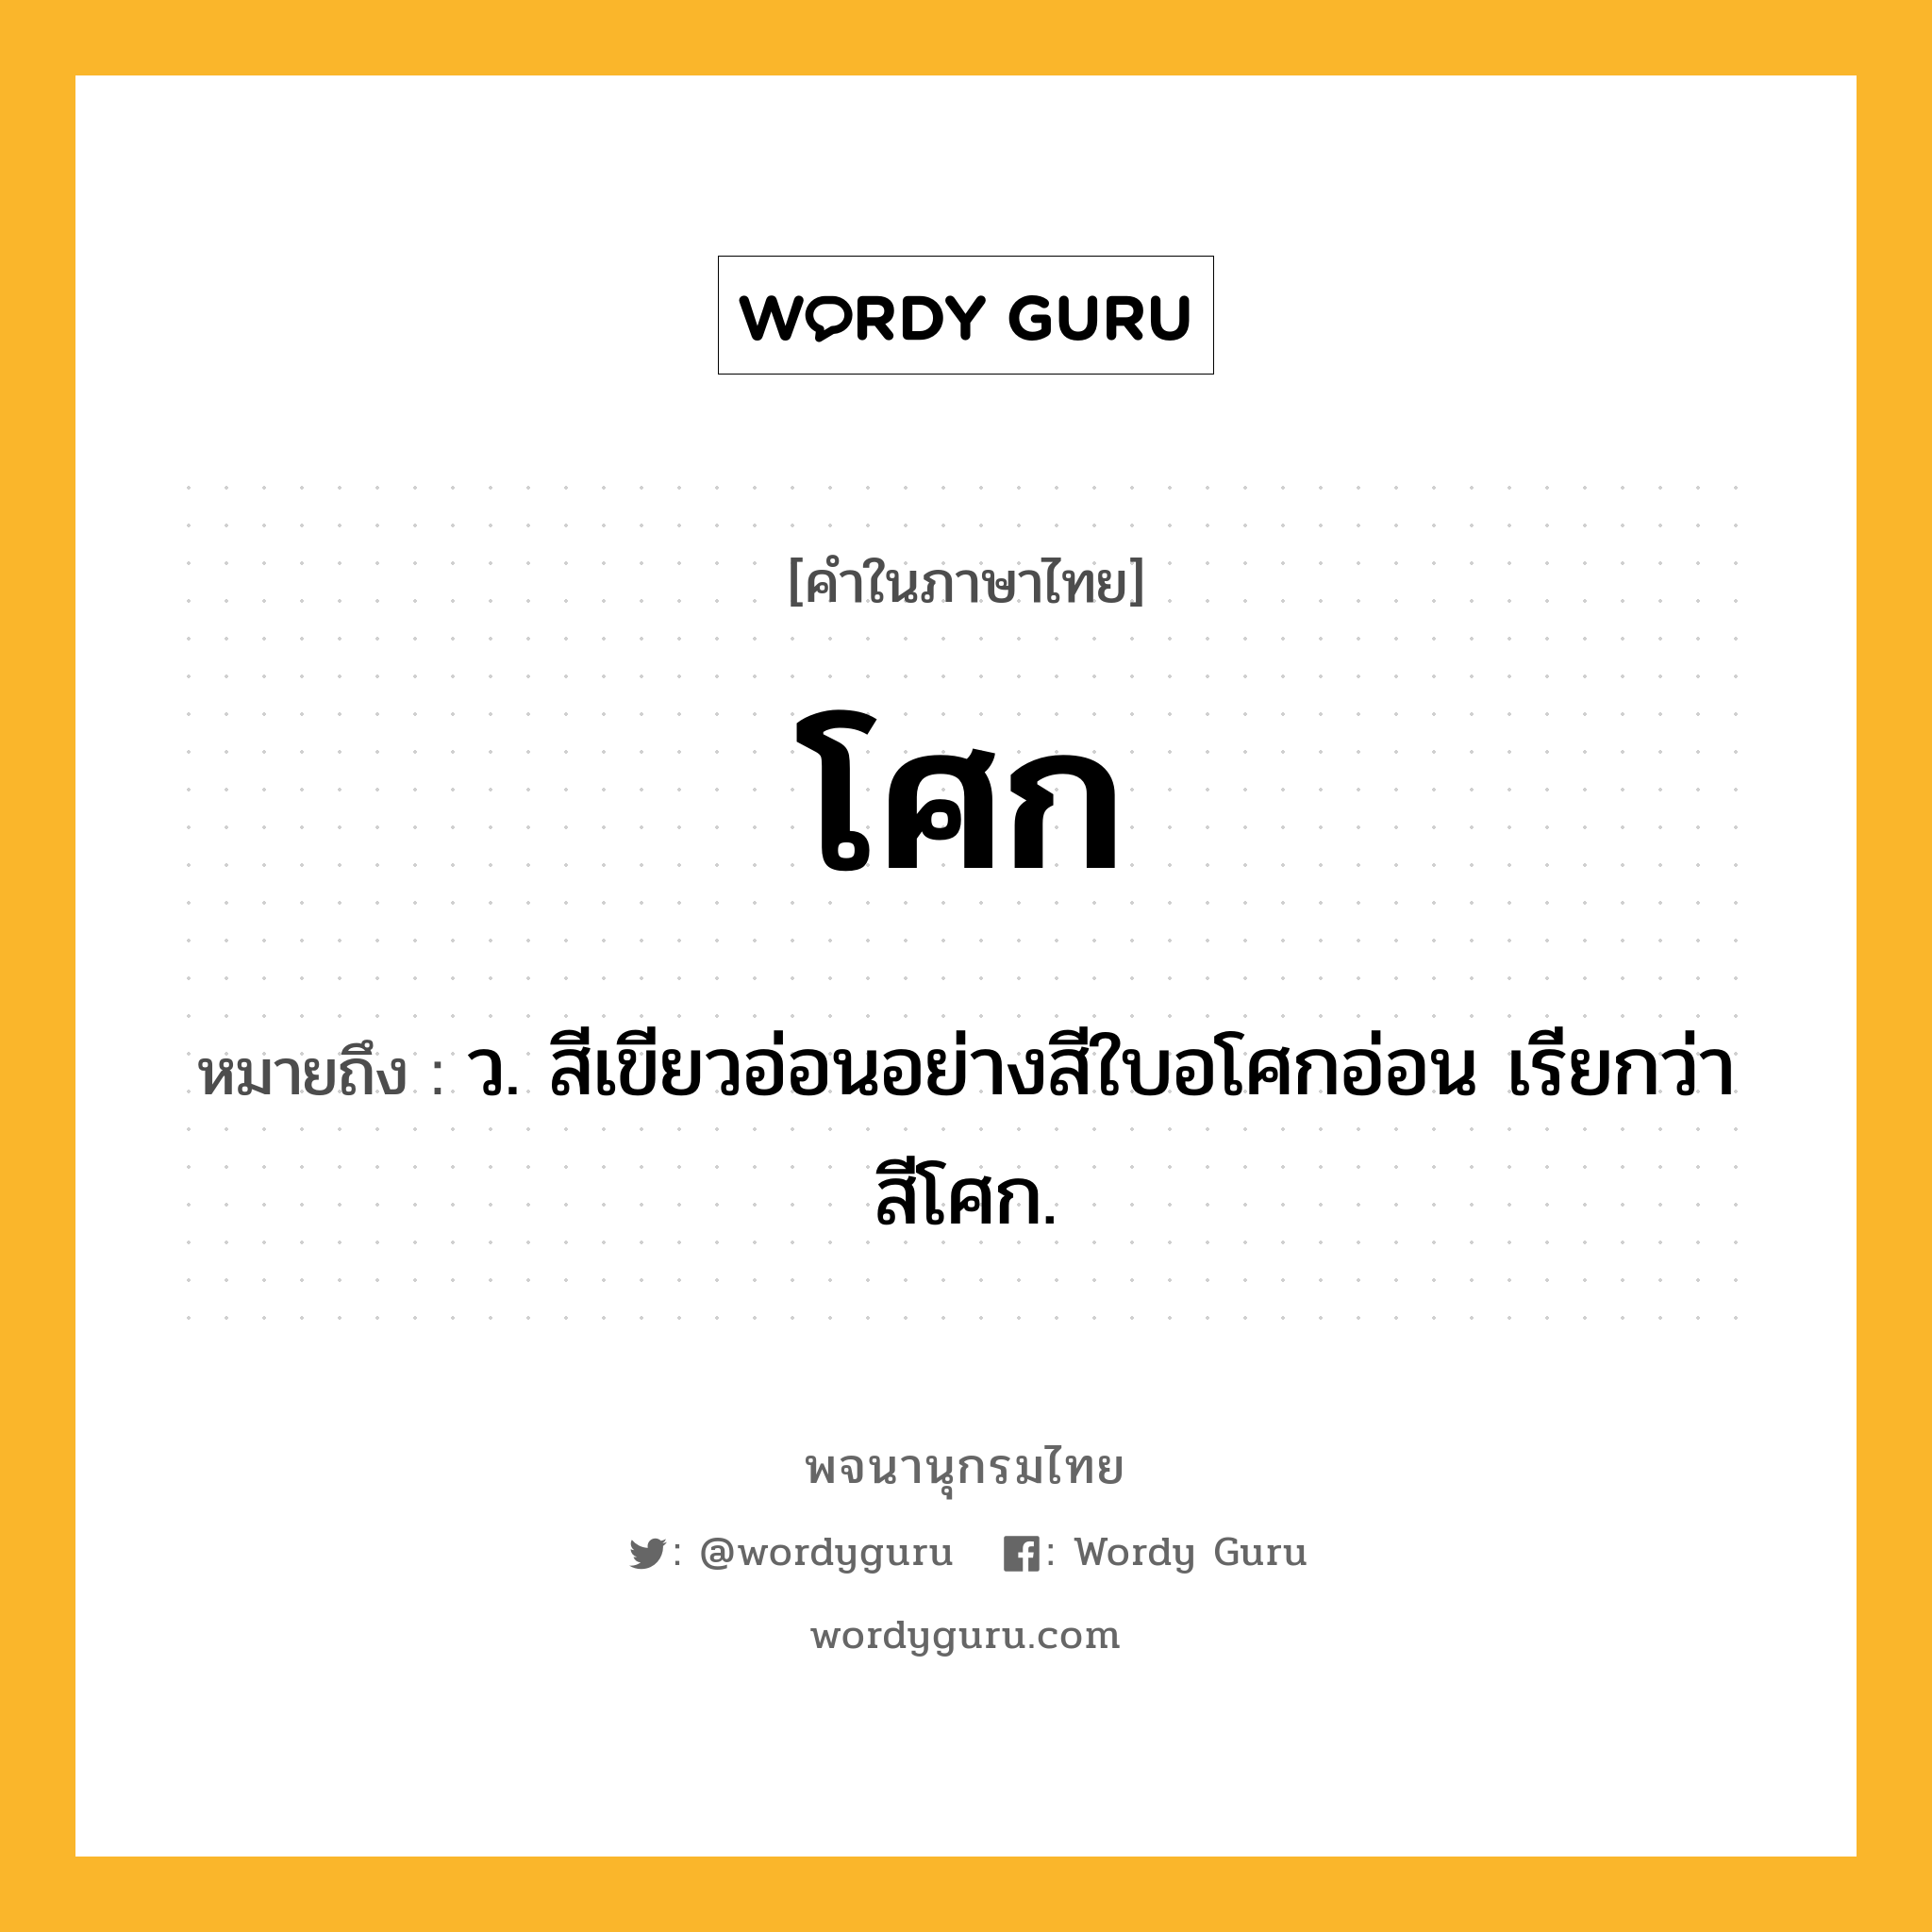 โศก ความหมาย หมายถึงอะไร?, คำในภาษาไทย โศก หมายถึง ว. สีเขียวอ่อนอย่างสีใบอโศกอ่อน เรียกว่า สีโศก.